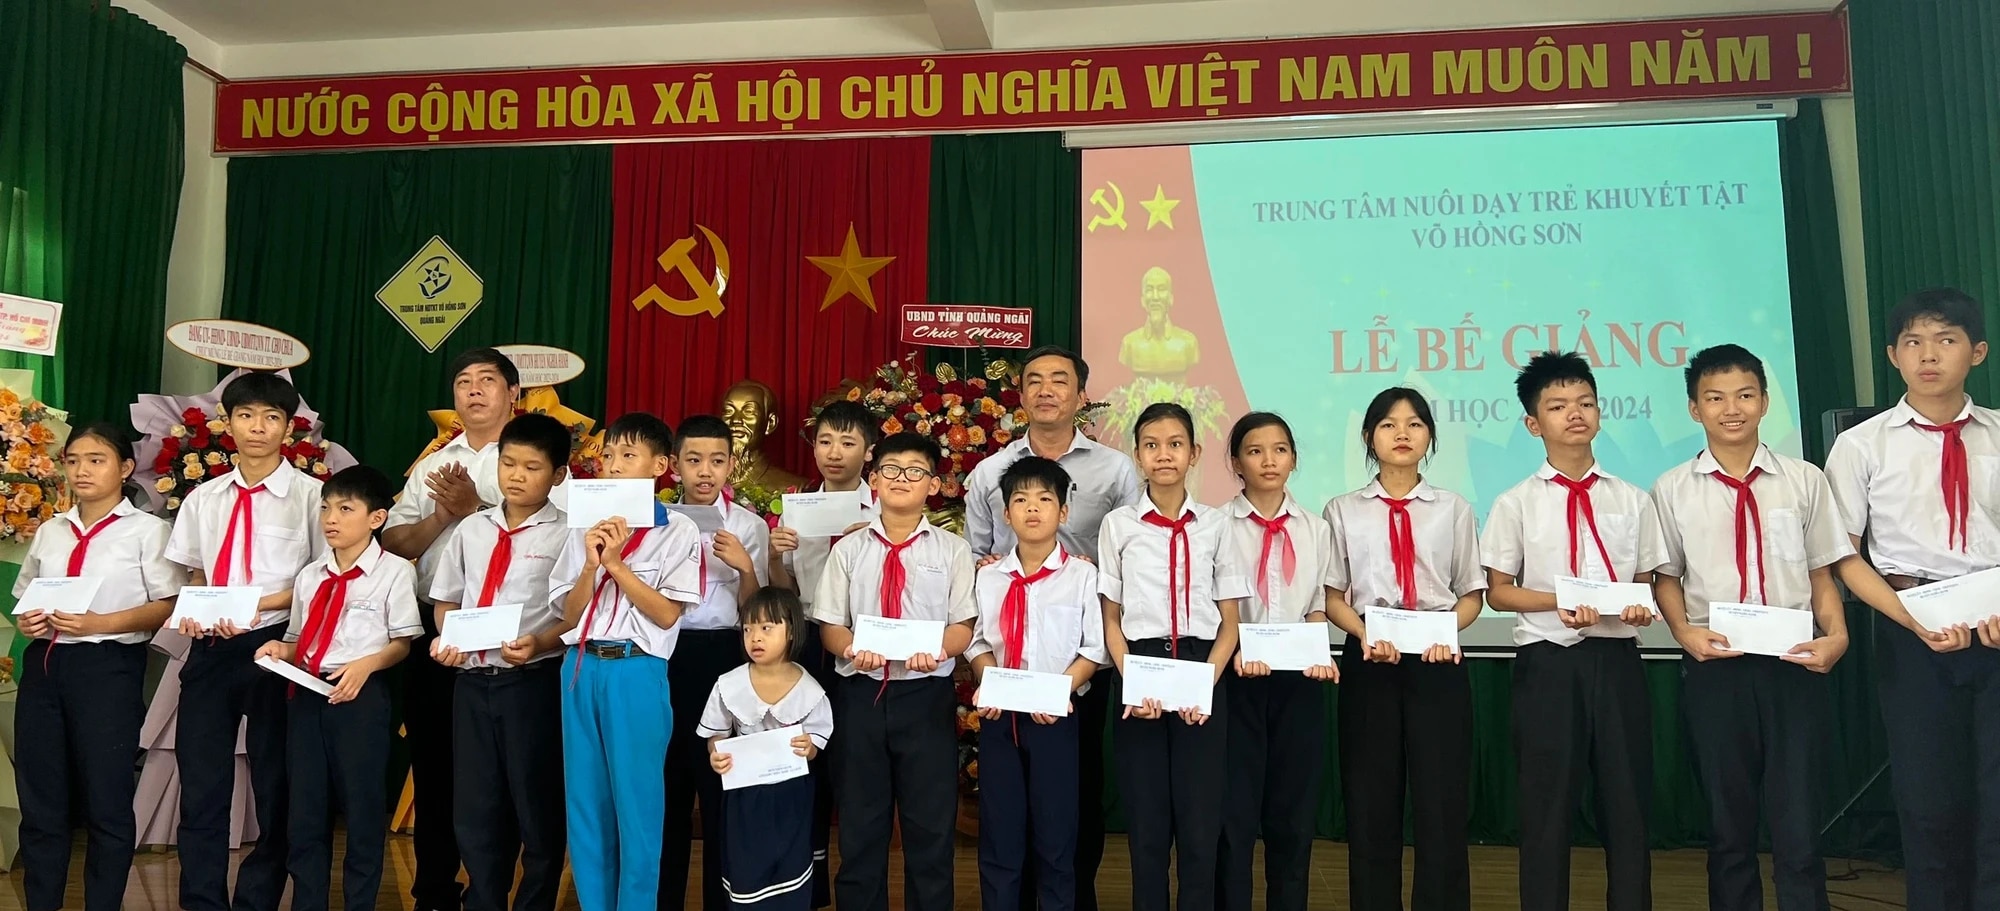 Trung tâm nuôi dạy trẻ khuyết tật Võ Hồng Sơn được hỗ trợ 2,5 tỉ đồng- Ảnh 2.